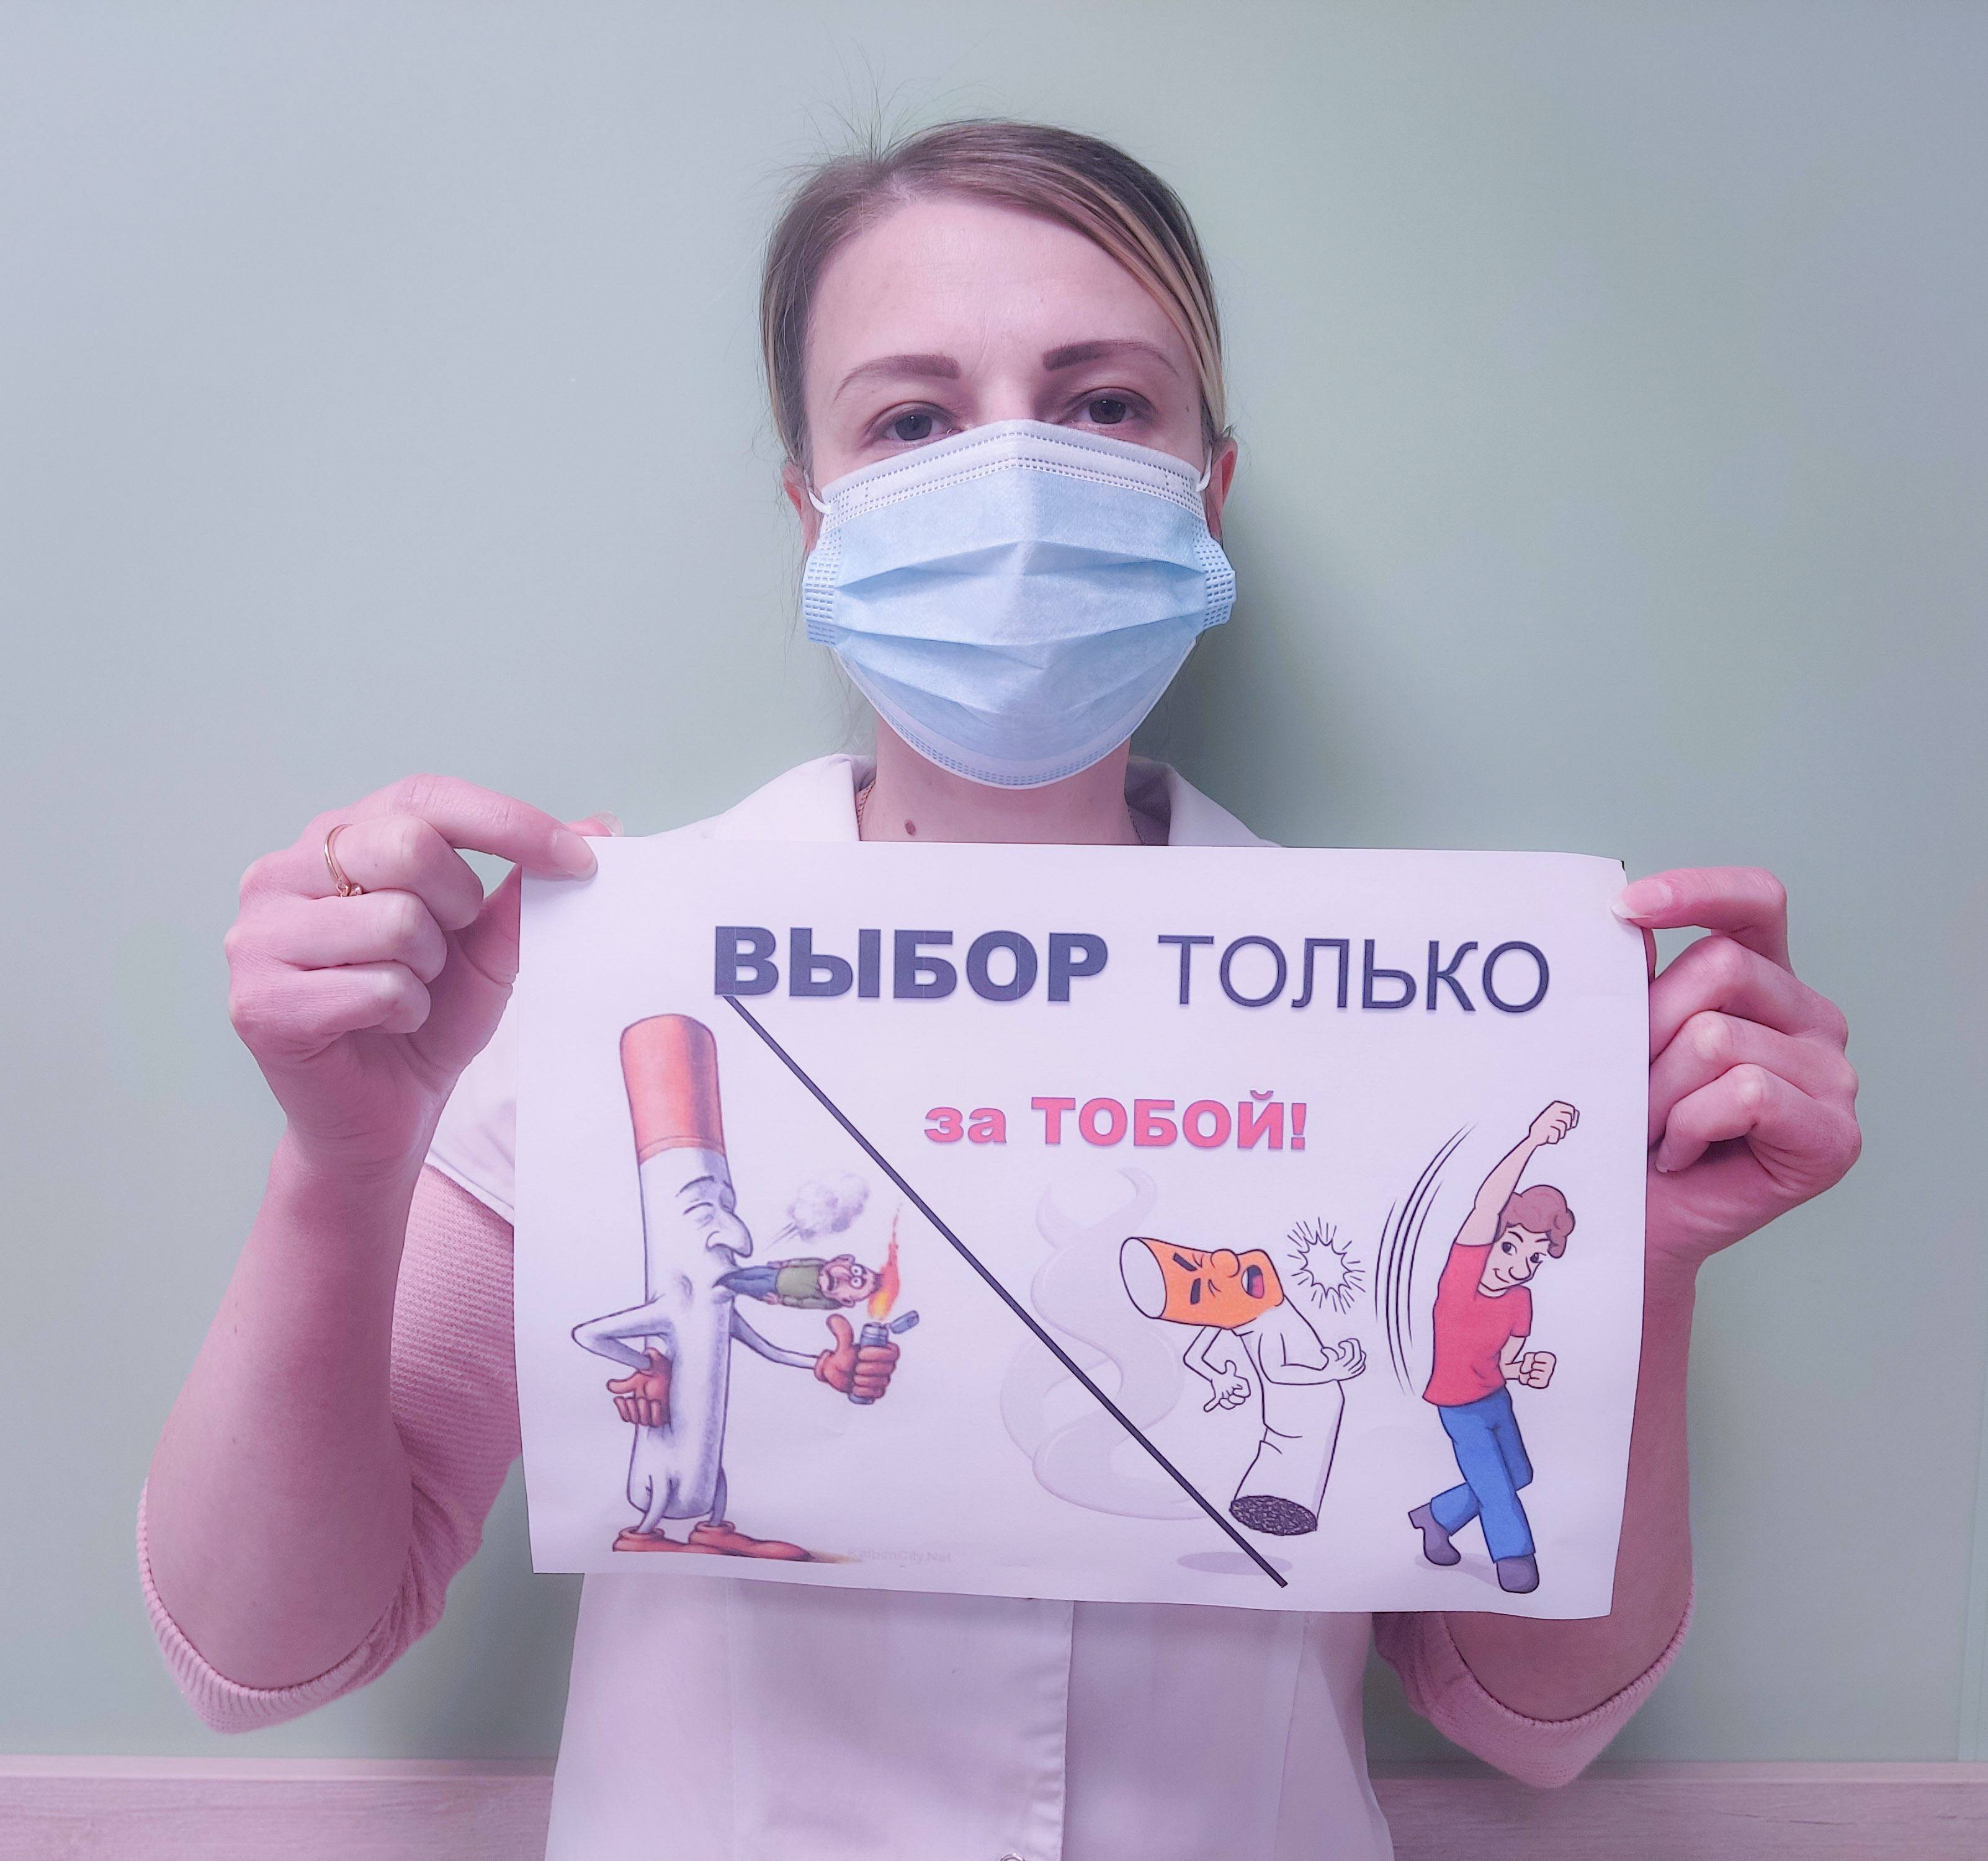 Виталий Гринченко — о рабочих буднях электромонтёра РЭС